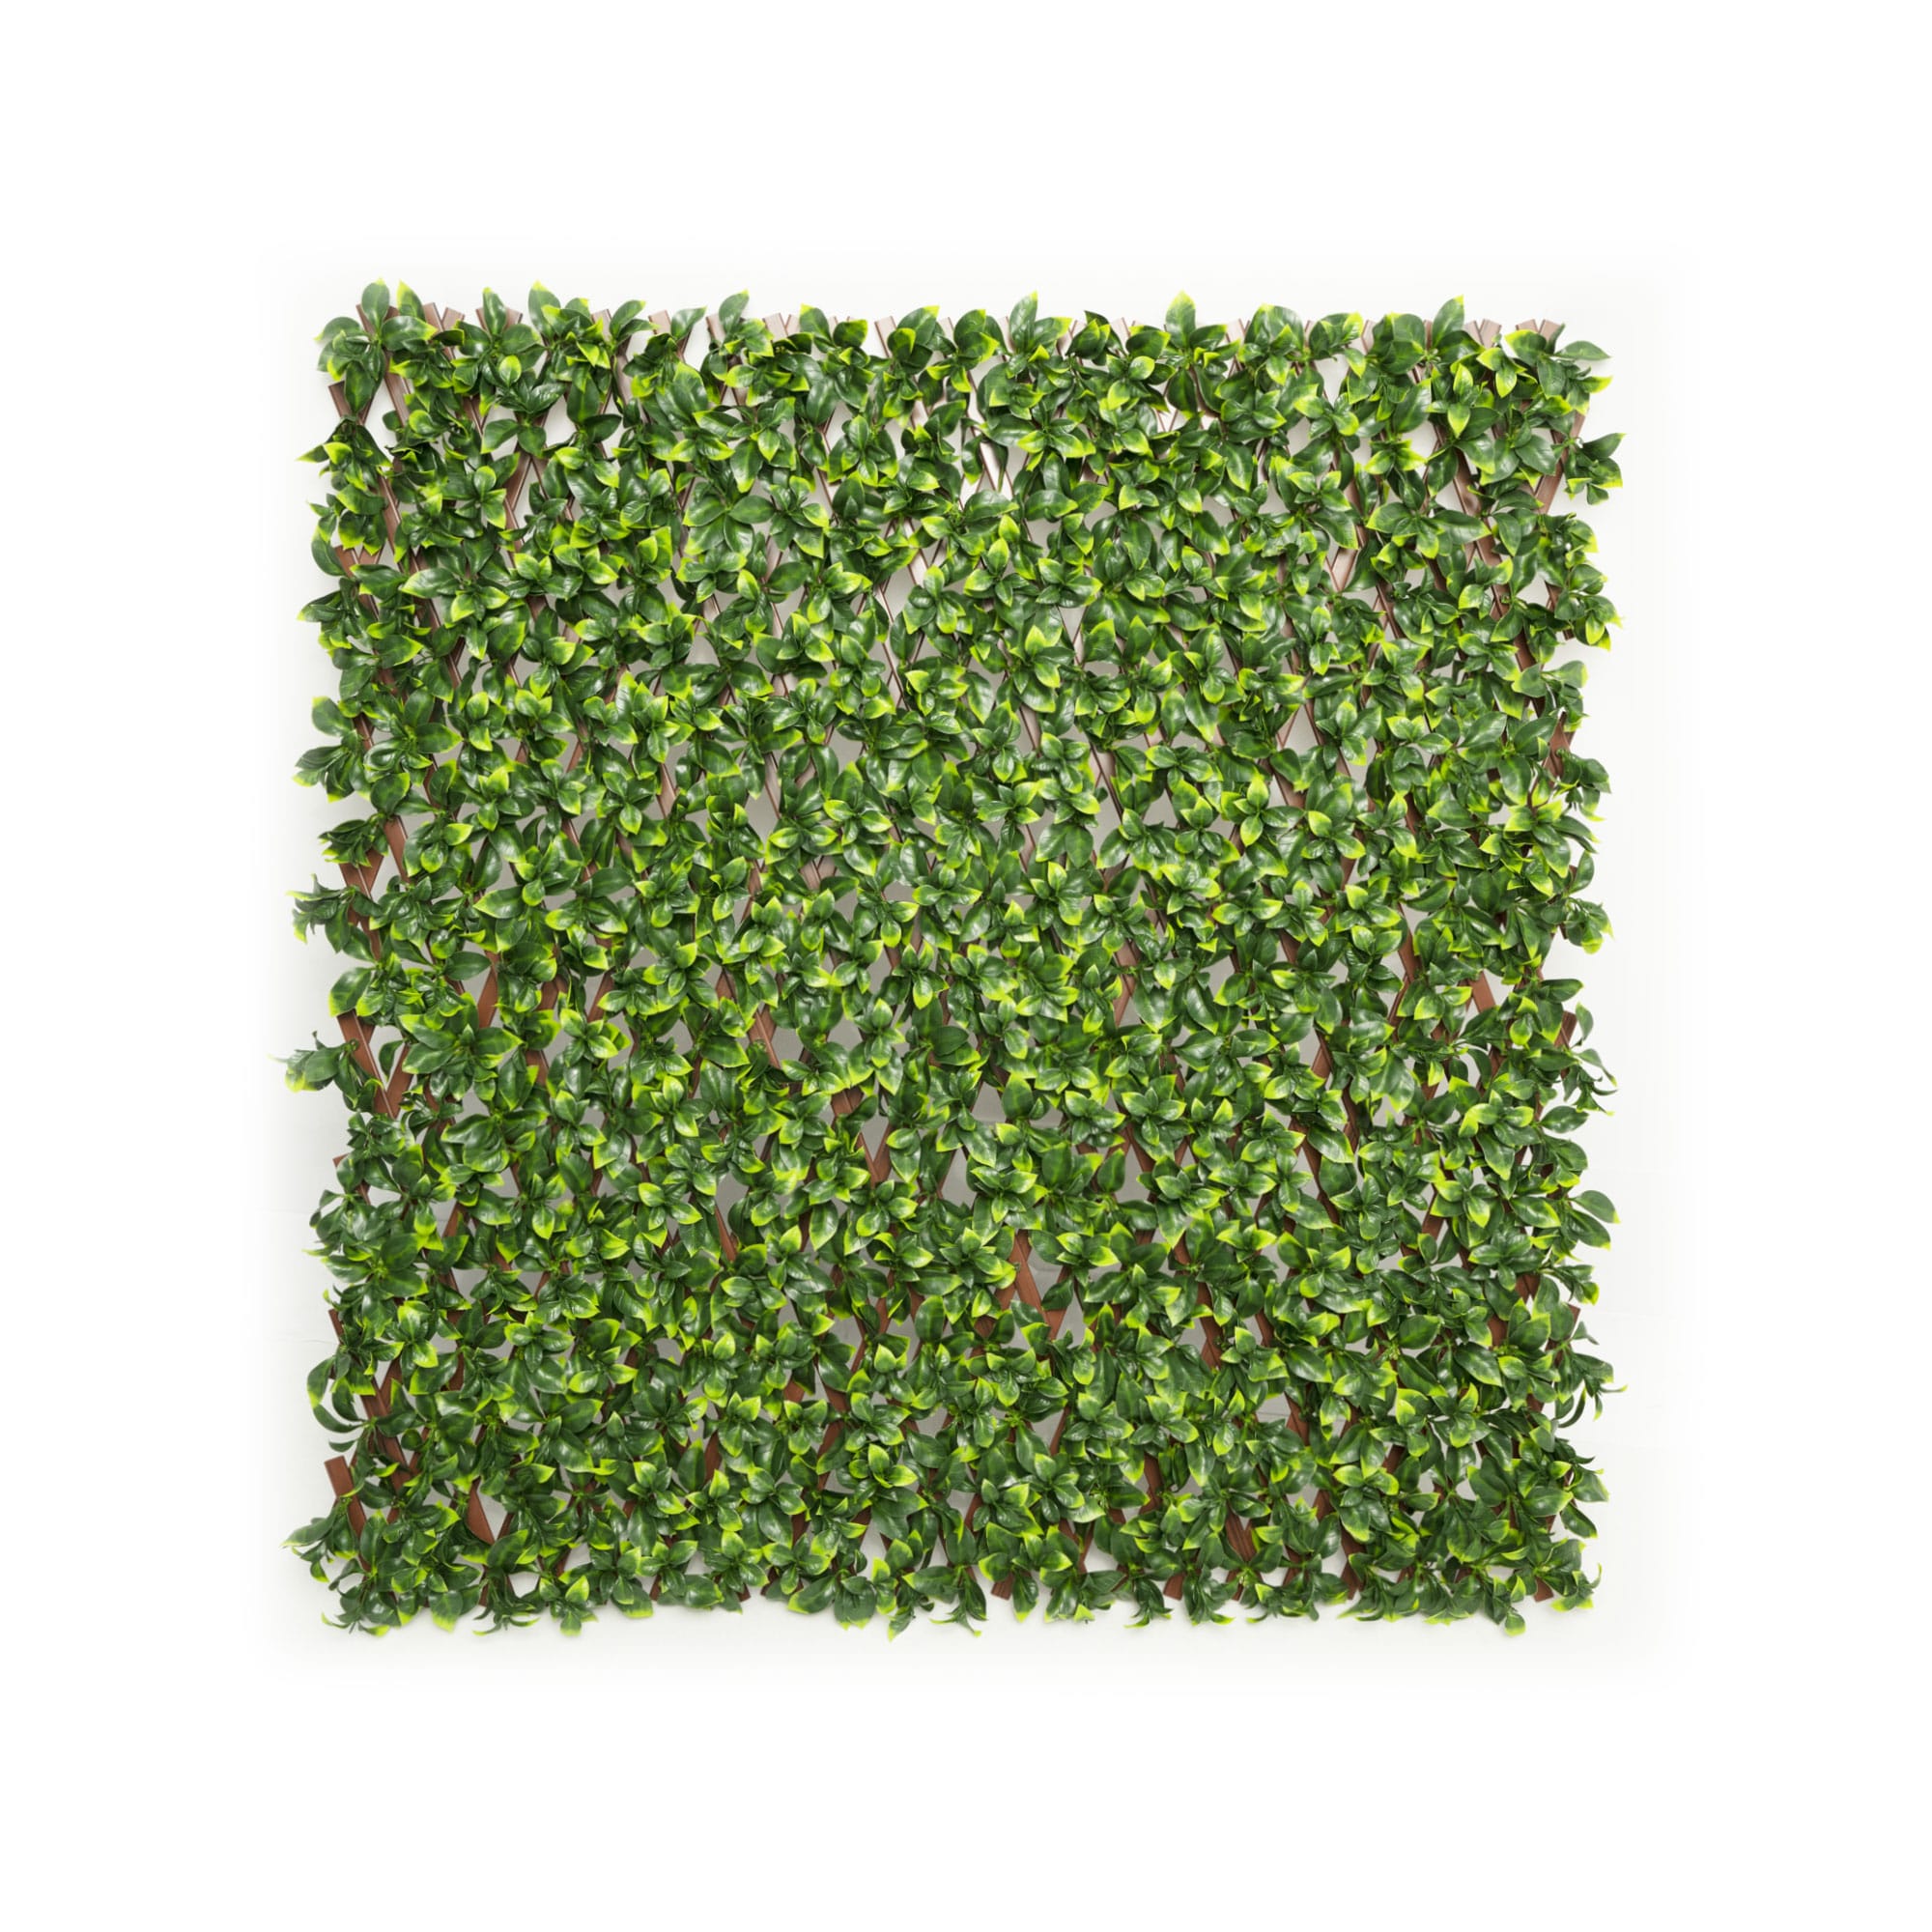 Valla planta artificial seto hiedra de pared Verde hoja pantalla privacidad 2x1m